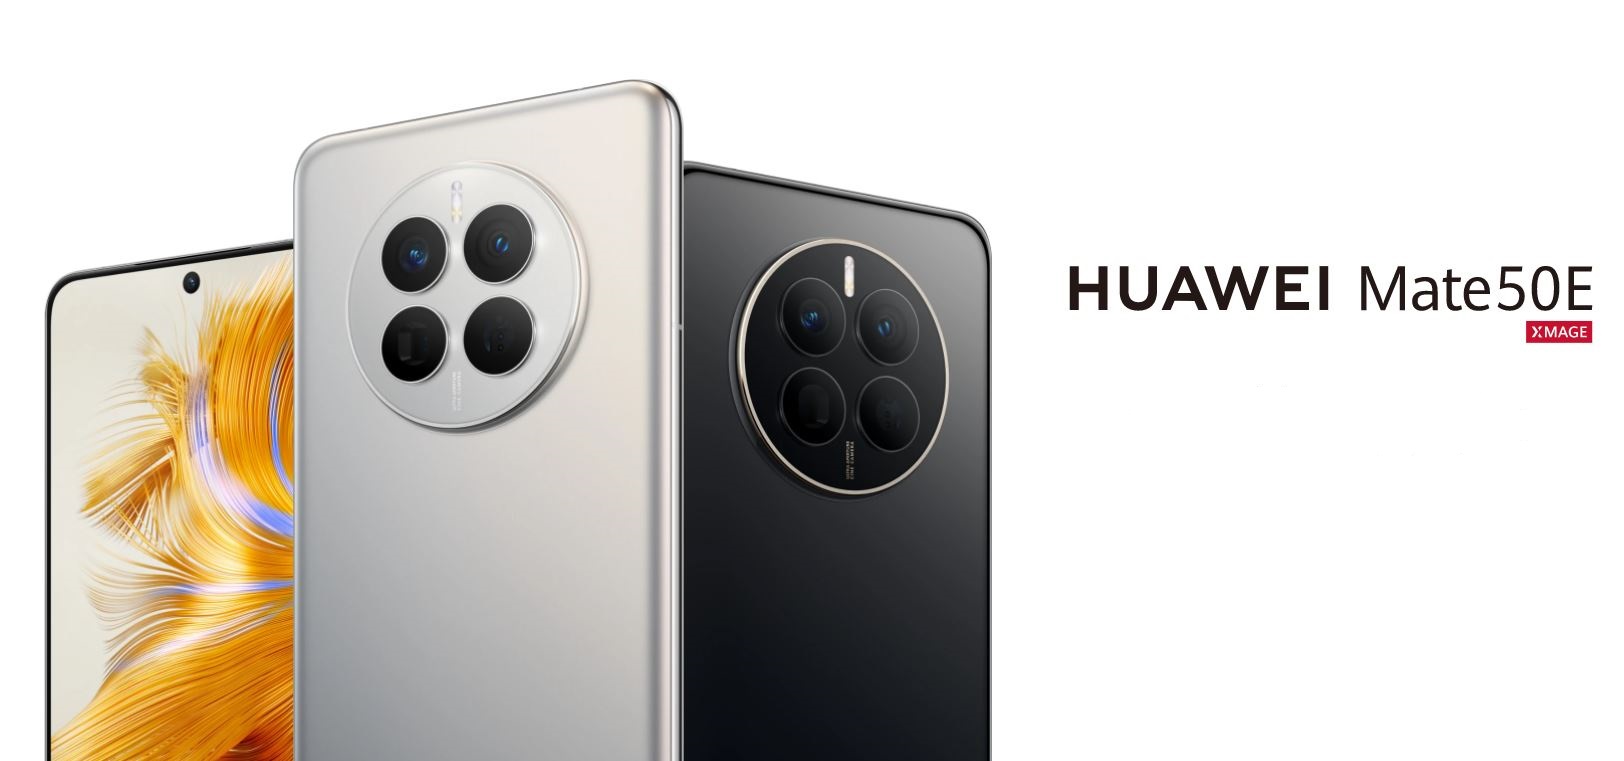 Вы сейчас просматриваете Huawei Mate 50E — младшая модель в линейке новых смартфонов: доступный смартфон с хорошей камерой